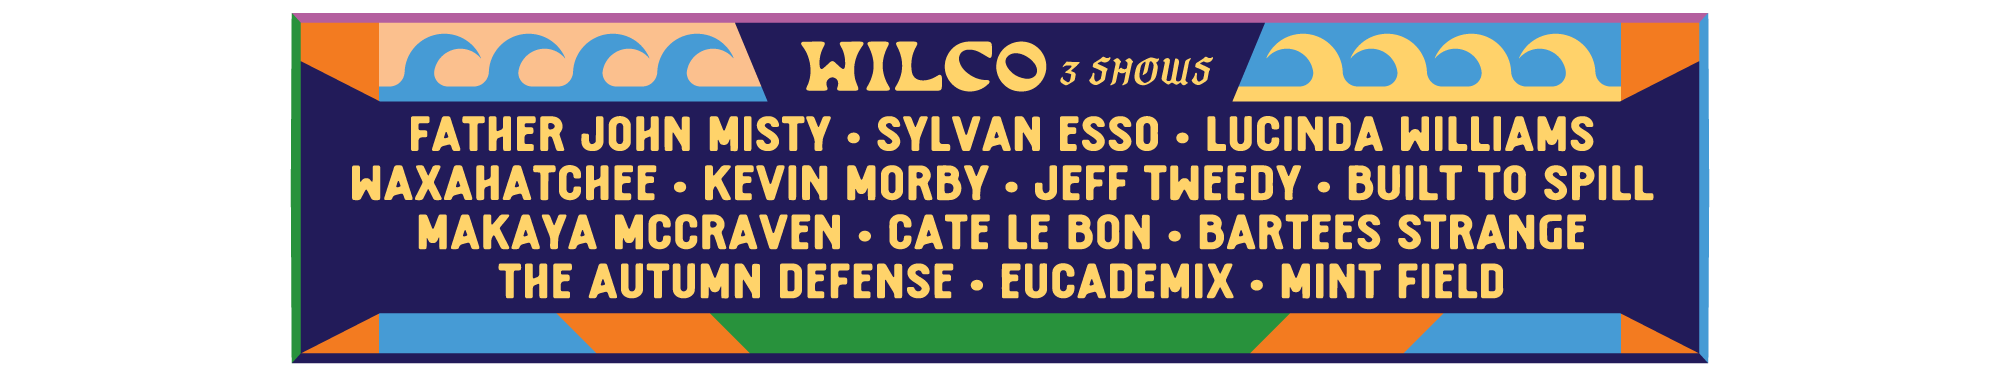 wilco tour review 2023